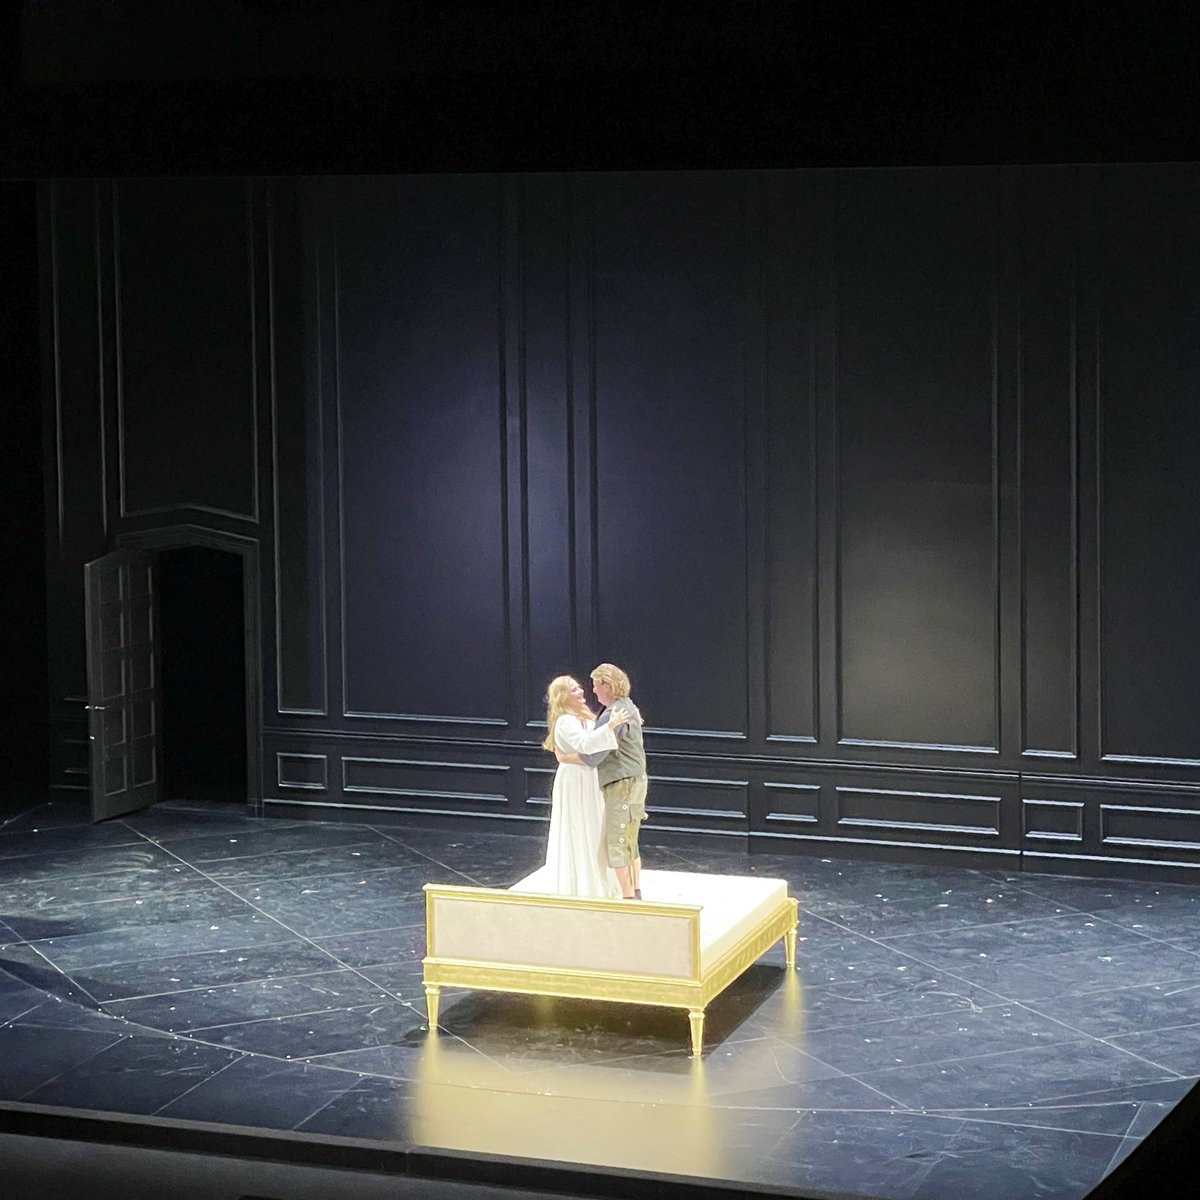 Un grande successo per #KlausFlorianVogt e per #CamillaNylund al termine del #Siegfried di #Wagner alla #Opernhaus